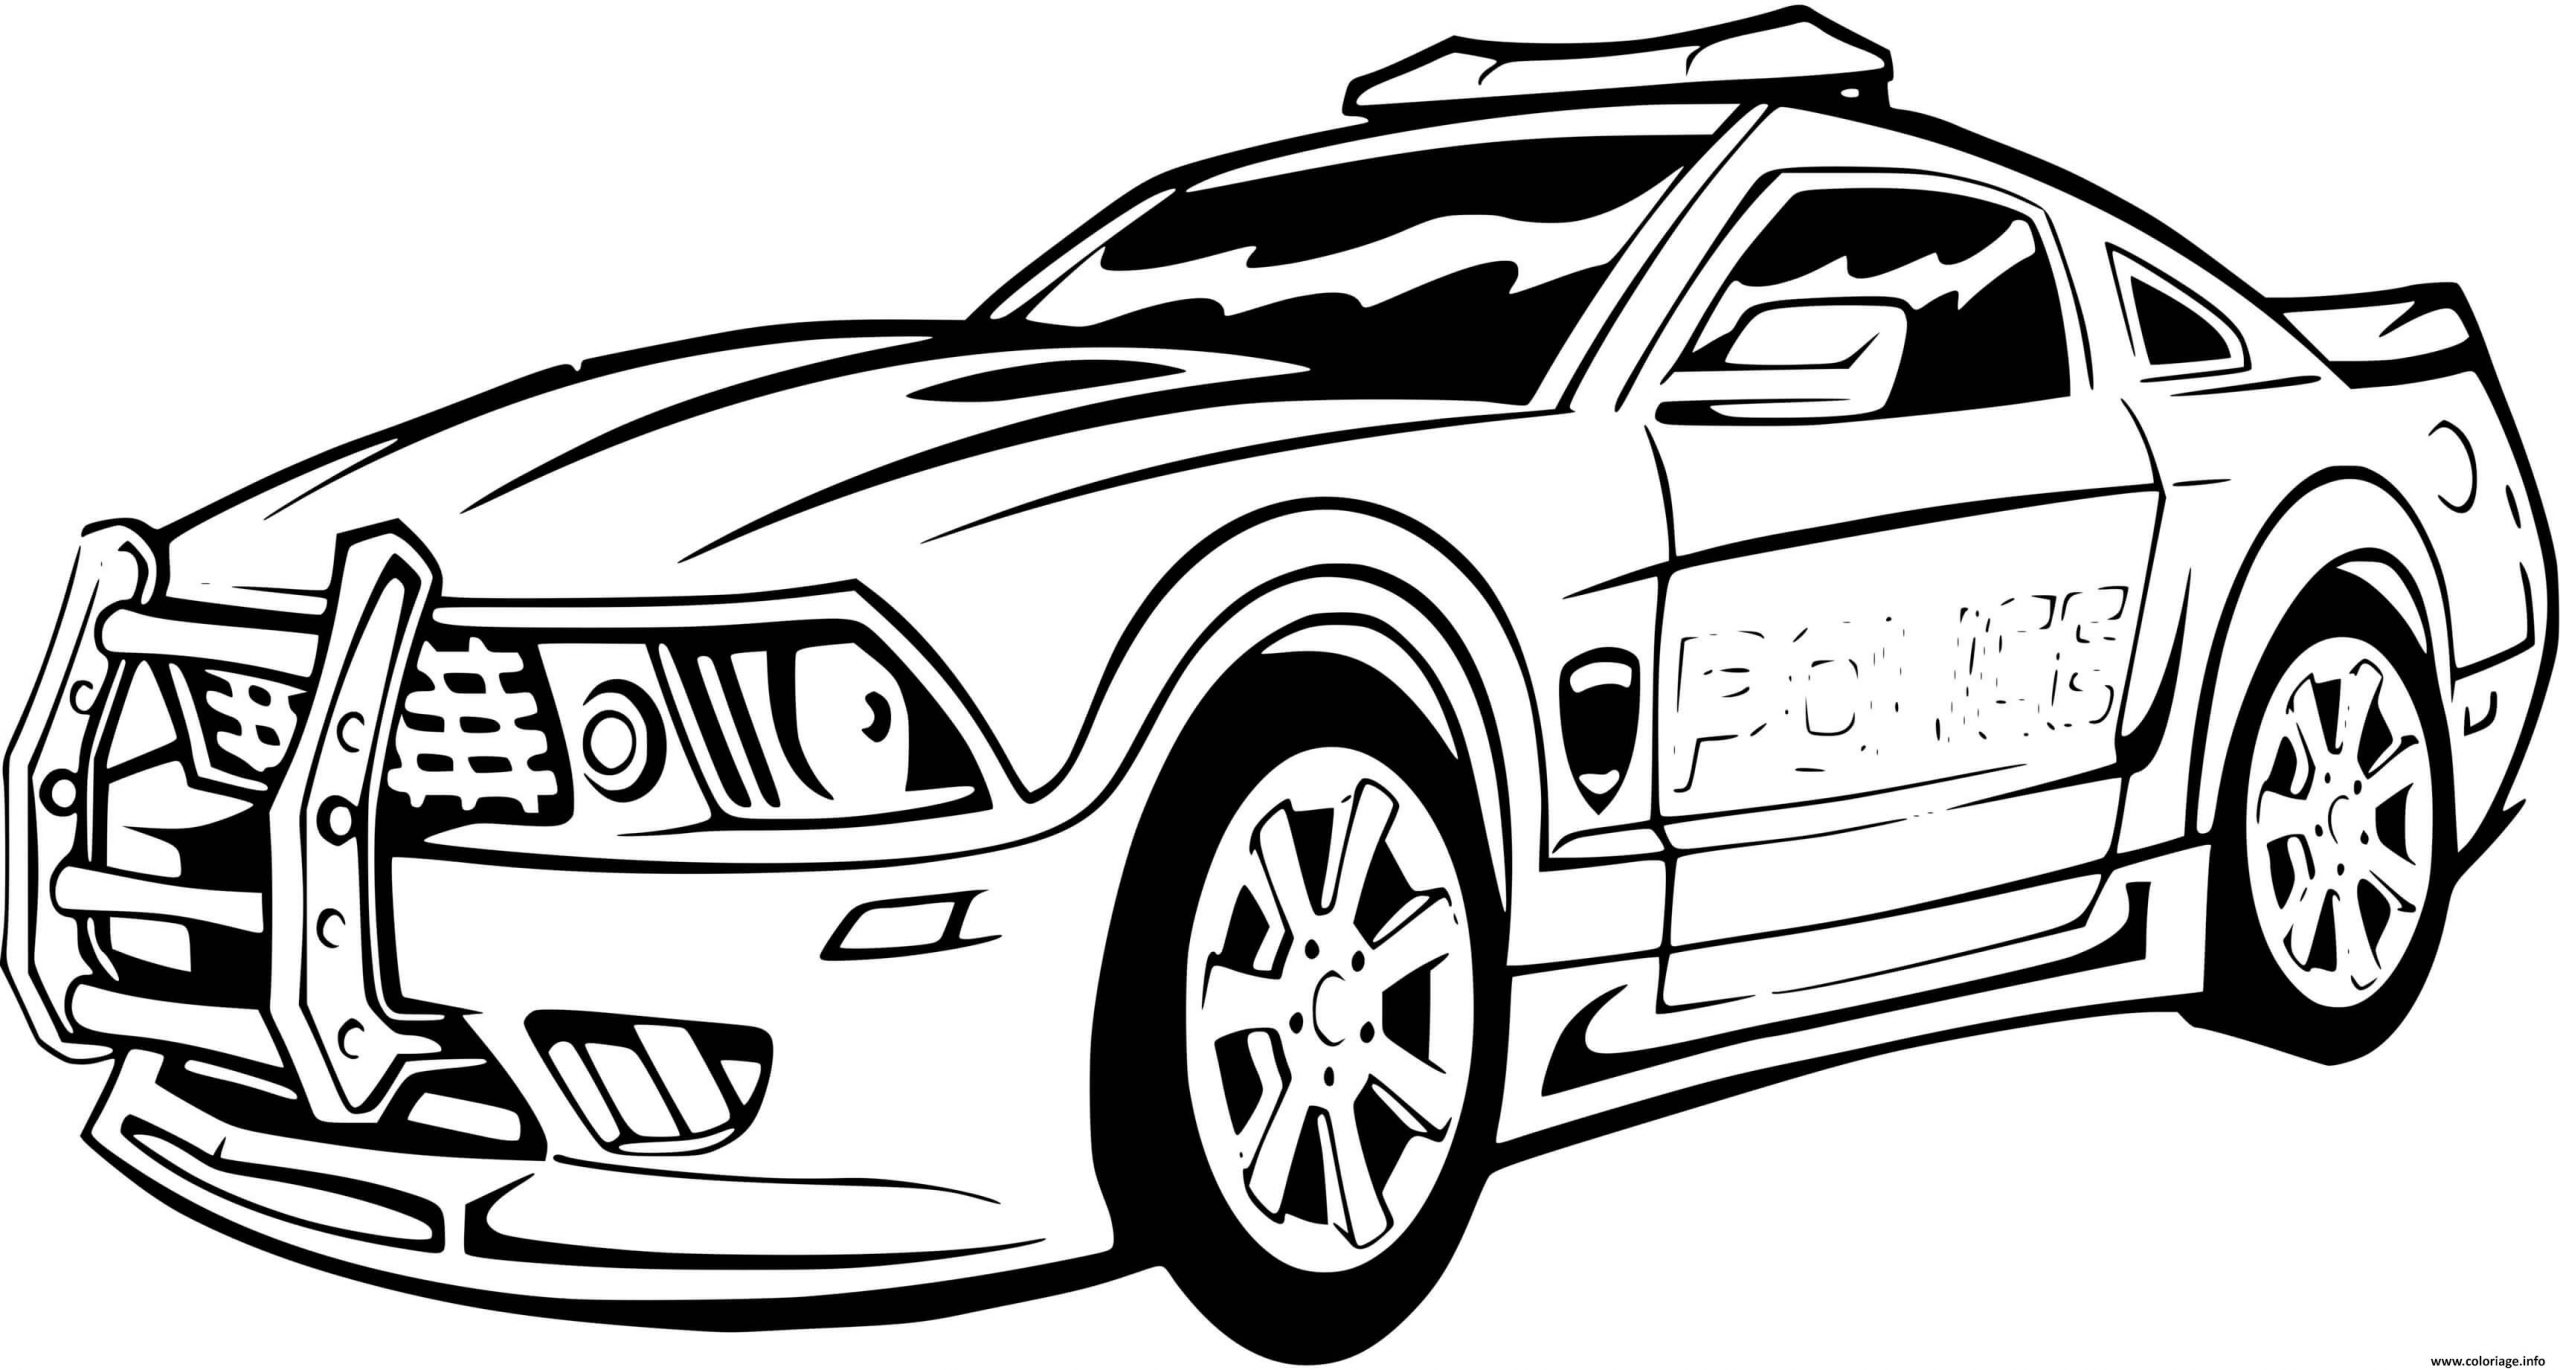 Coloriage Voiture De Police Sport Mustang Ford Dessin Voiture De Police tout Coloriages Voitures De Course